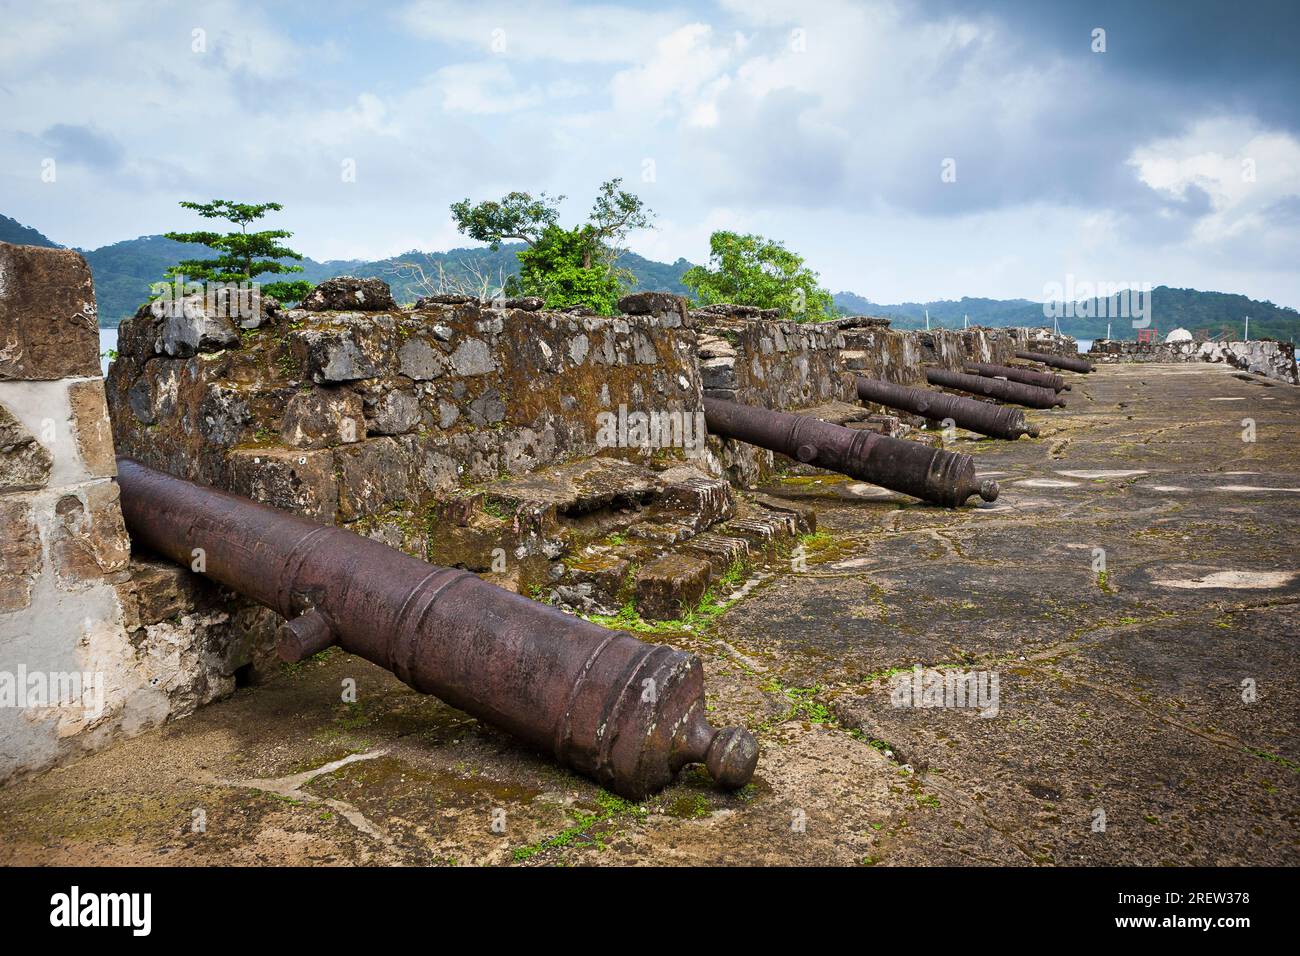 Cannons at Fuerte Santiago fortress in the Portobelo village, Colon province, Republic of Panama, Central America Stock Photo